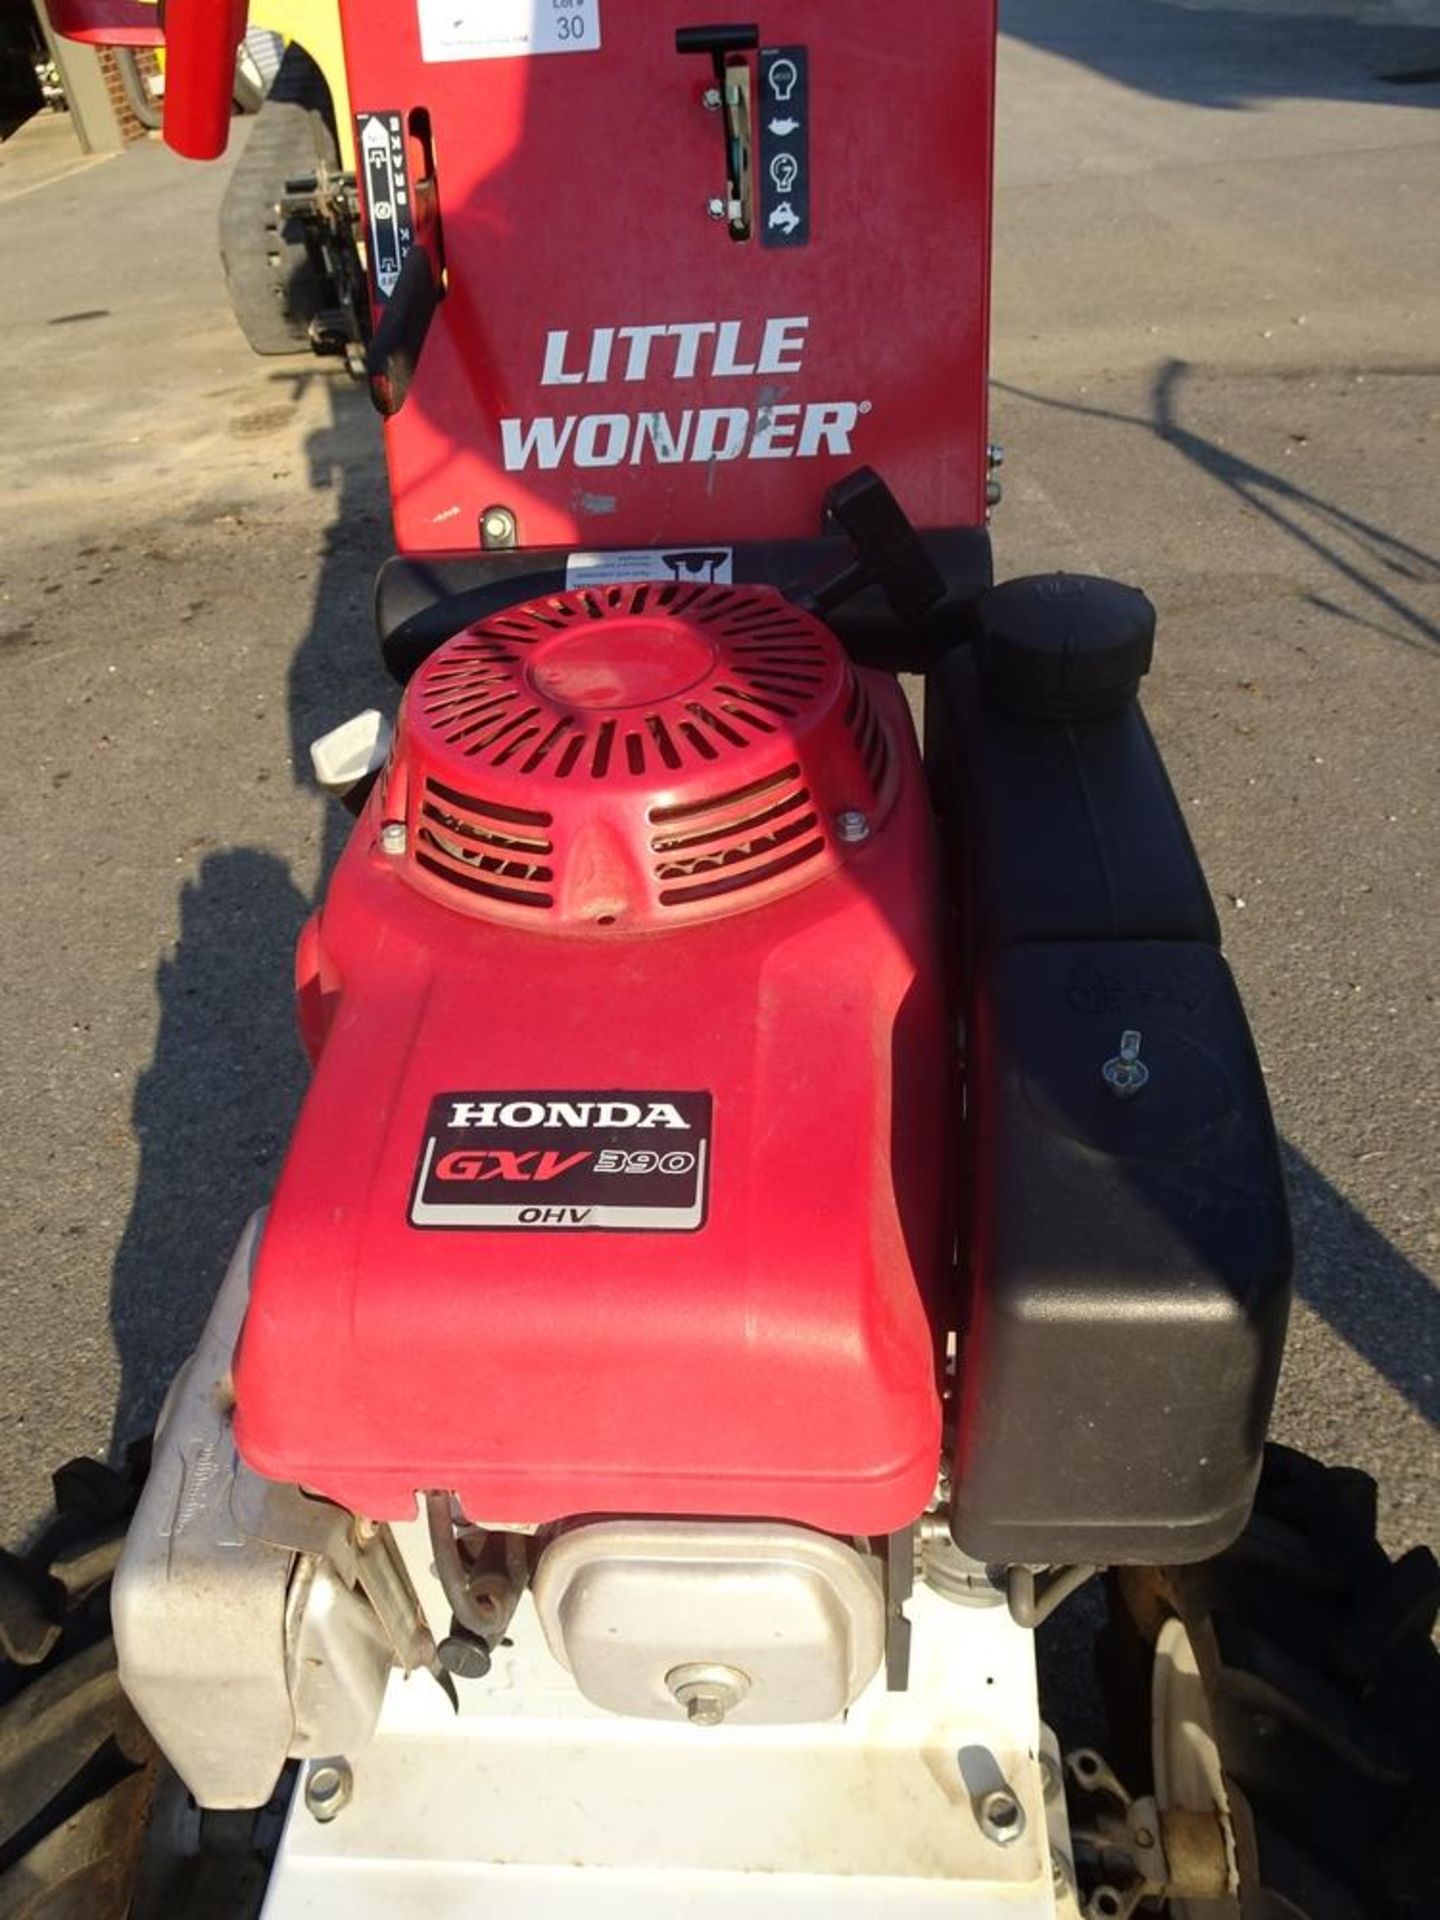 2013 Schiller Industries "Little Wonder" BRC-26 26" Brush Mower With Honda GXV390 Motor sn 5126-22- - Image 2 of 6